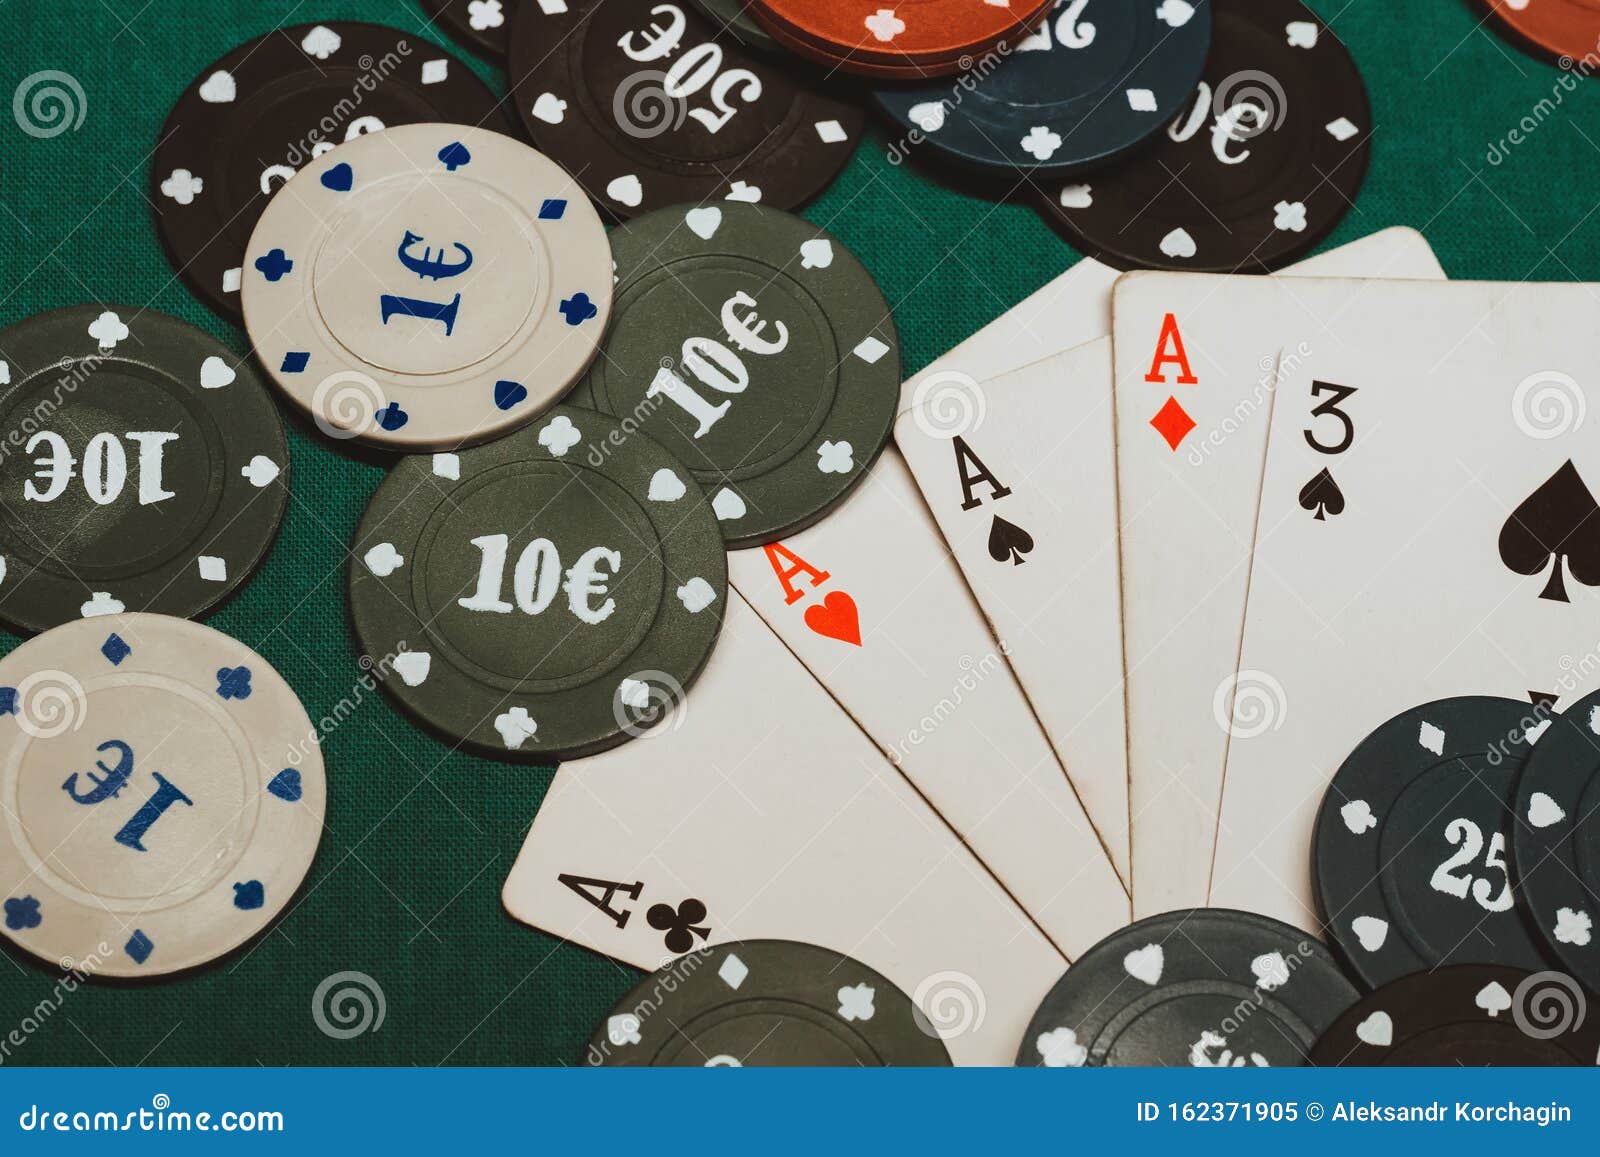 4 туза в казино как играть на казино